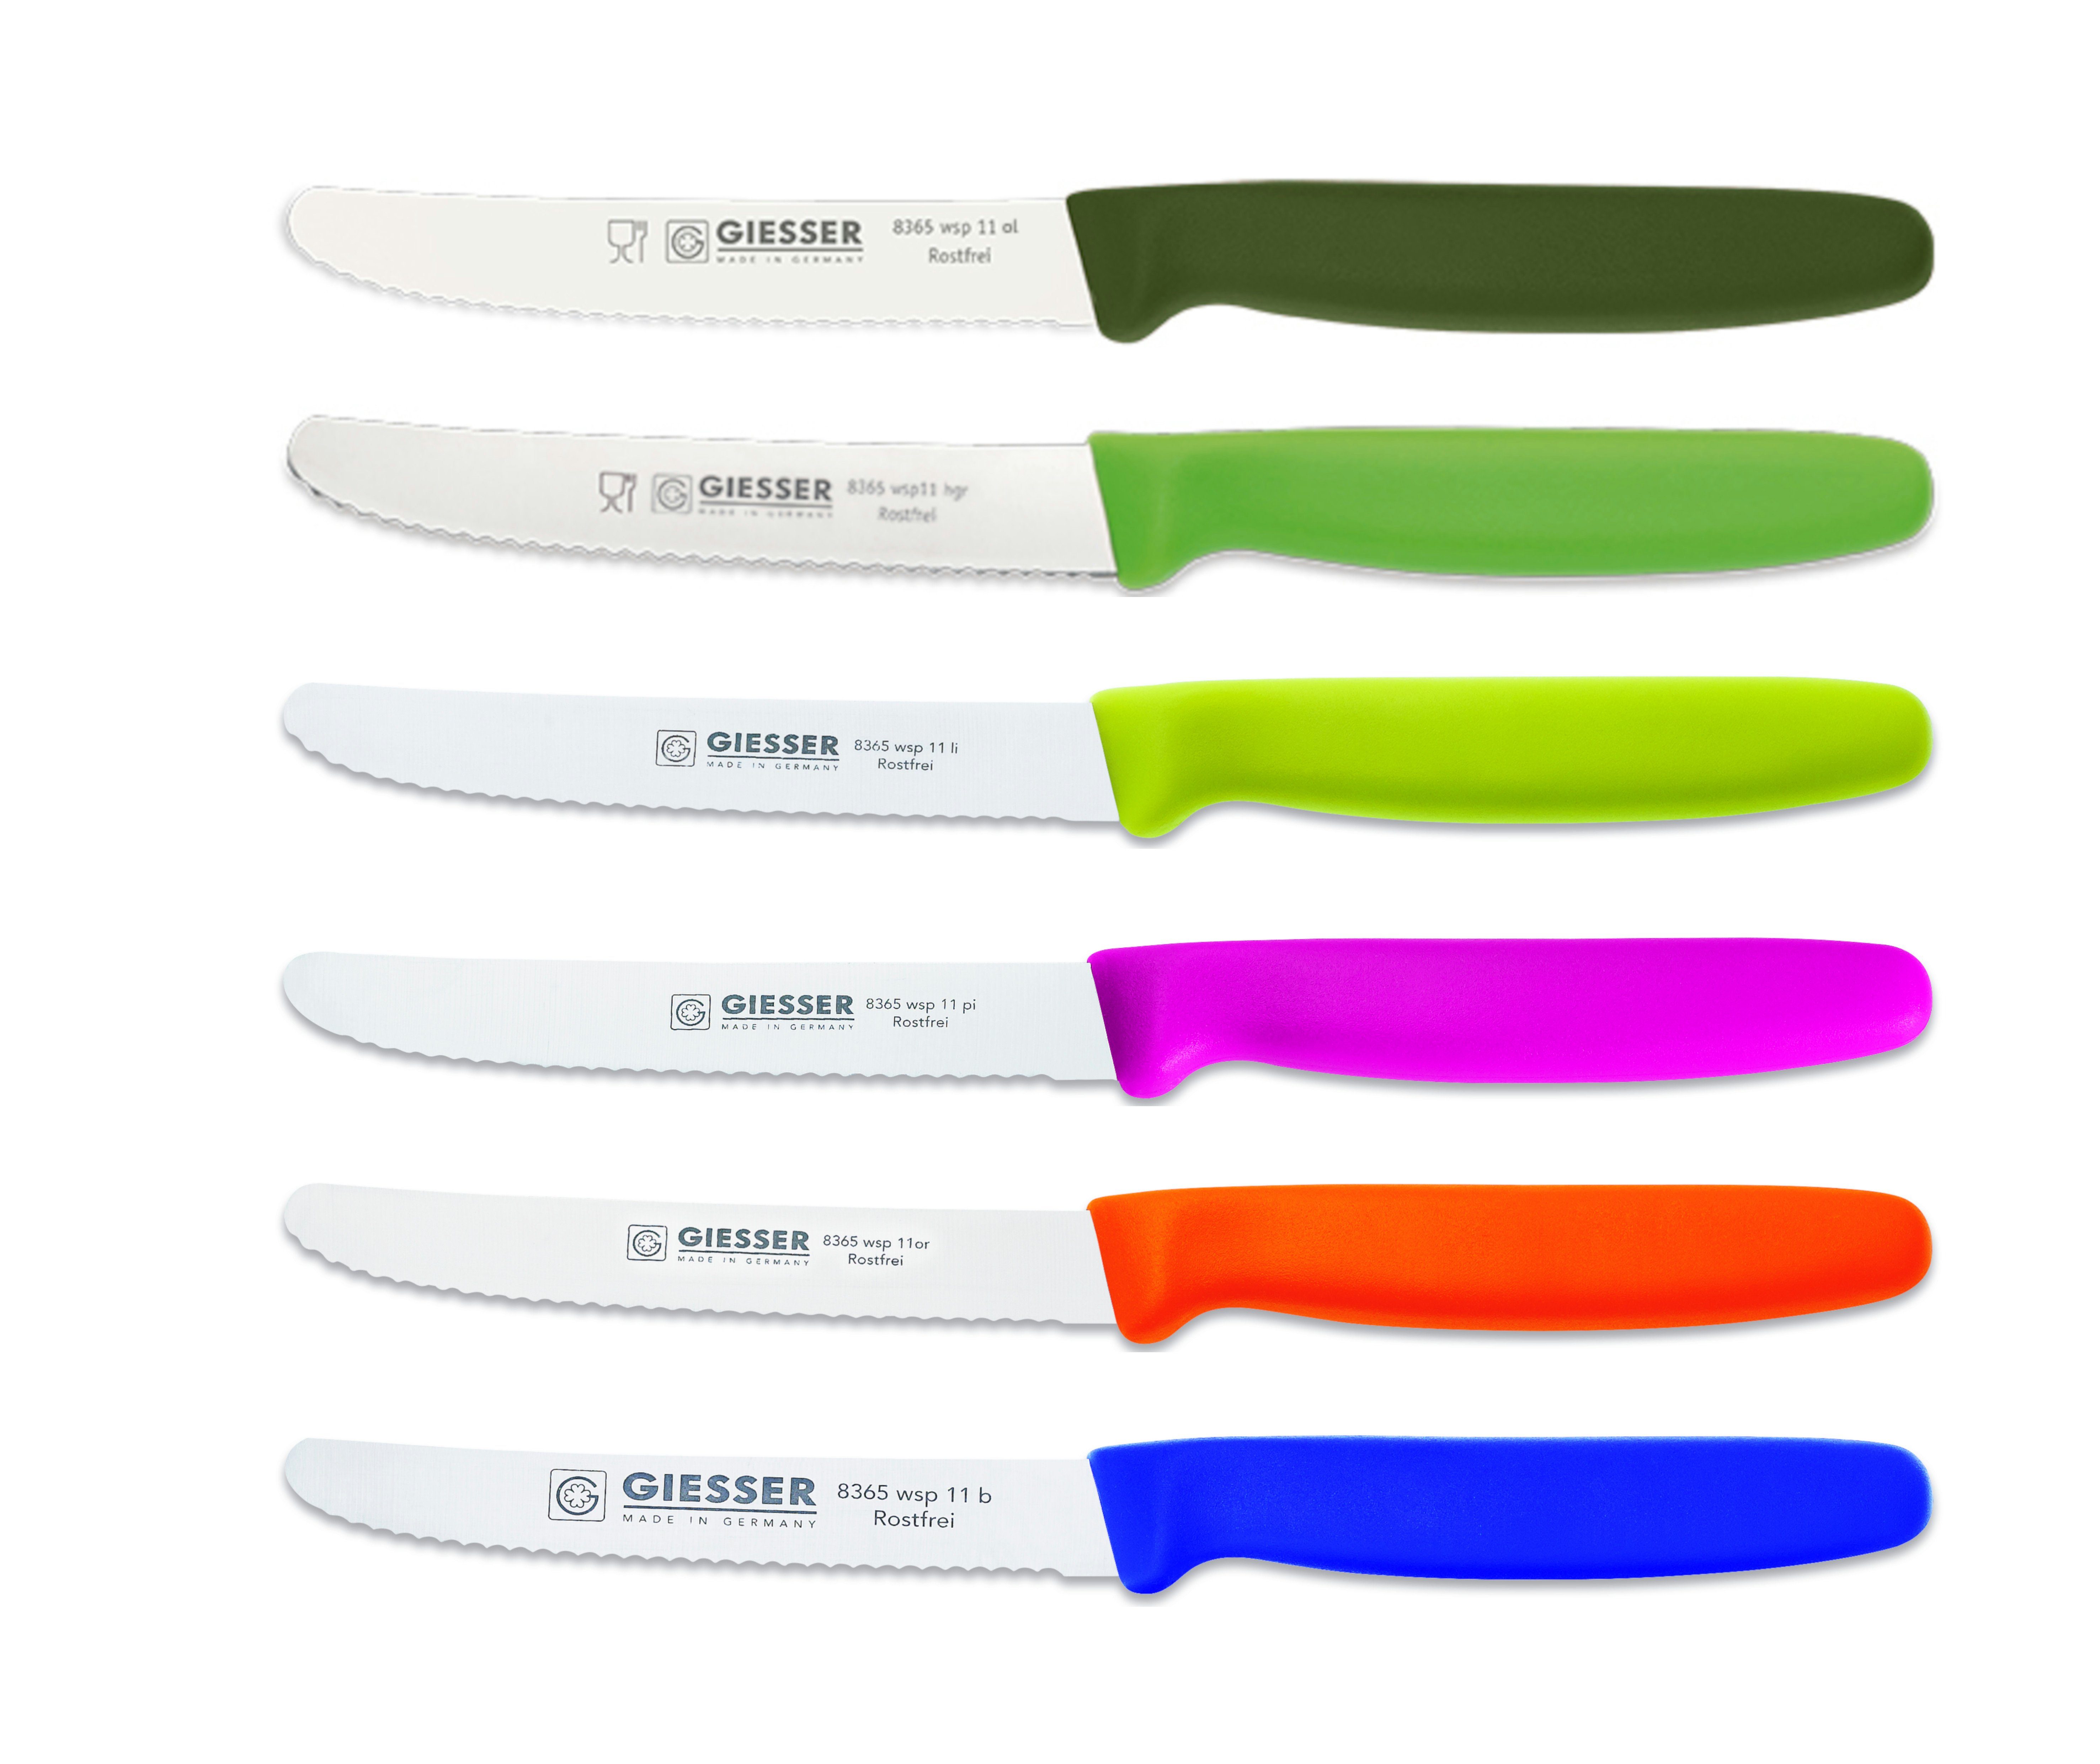 Giesser Messer 8365 wsp Wellenschliff; Set 6er 3mm Brötchenmesser extrem 11-6, Tomatenmesser gemischt; bunt ol-hgr-li-pi-or-b Scharf